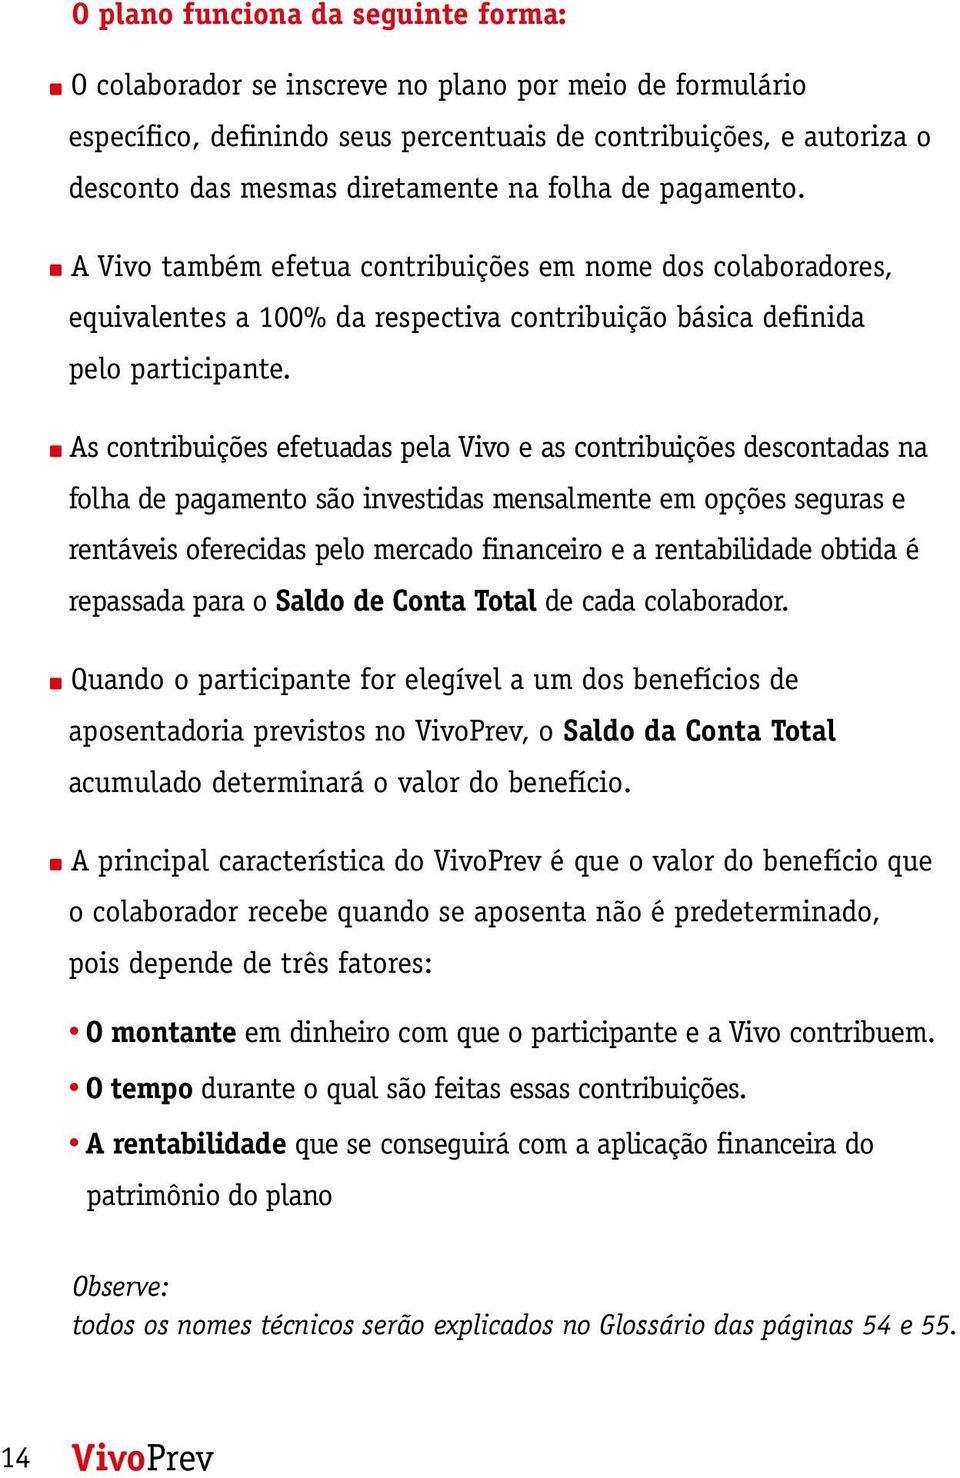 As contribuições efetuadas pela Vivo e as contribuições descontadas na folha de pagamento são investidas mensalmente em opções seguras e rentáveis oferecidas pelo mercado financeiro e a rentabilidade